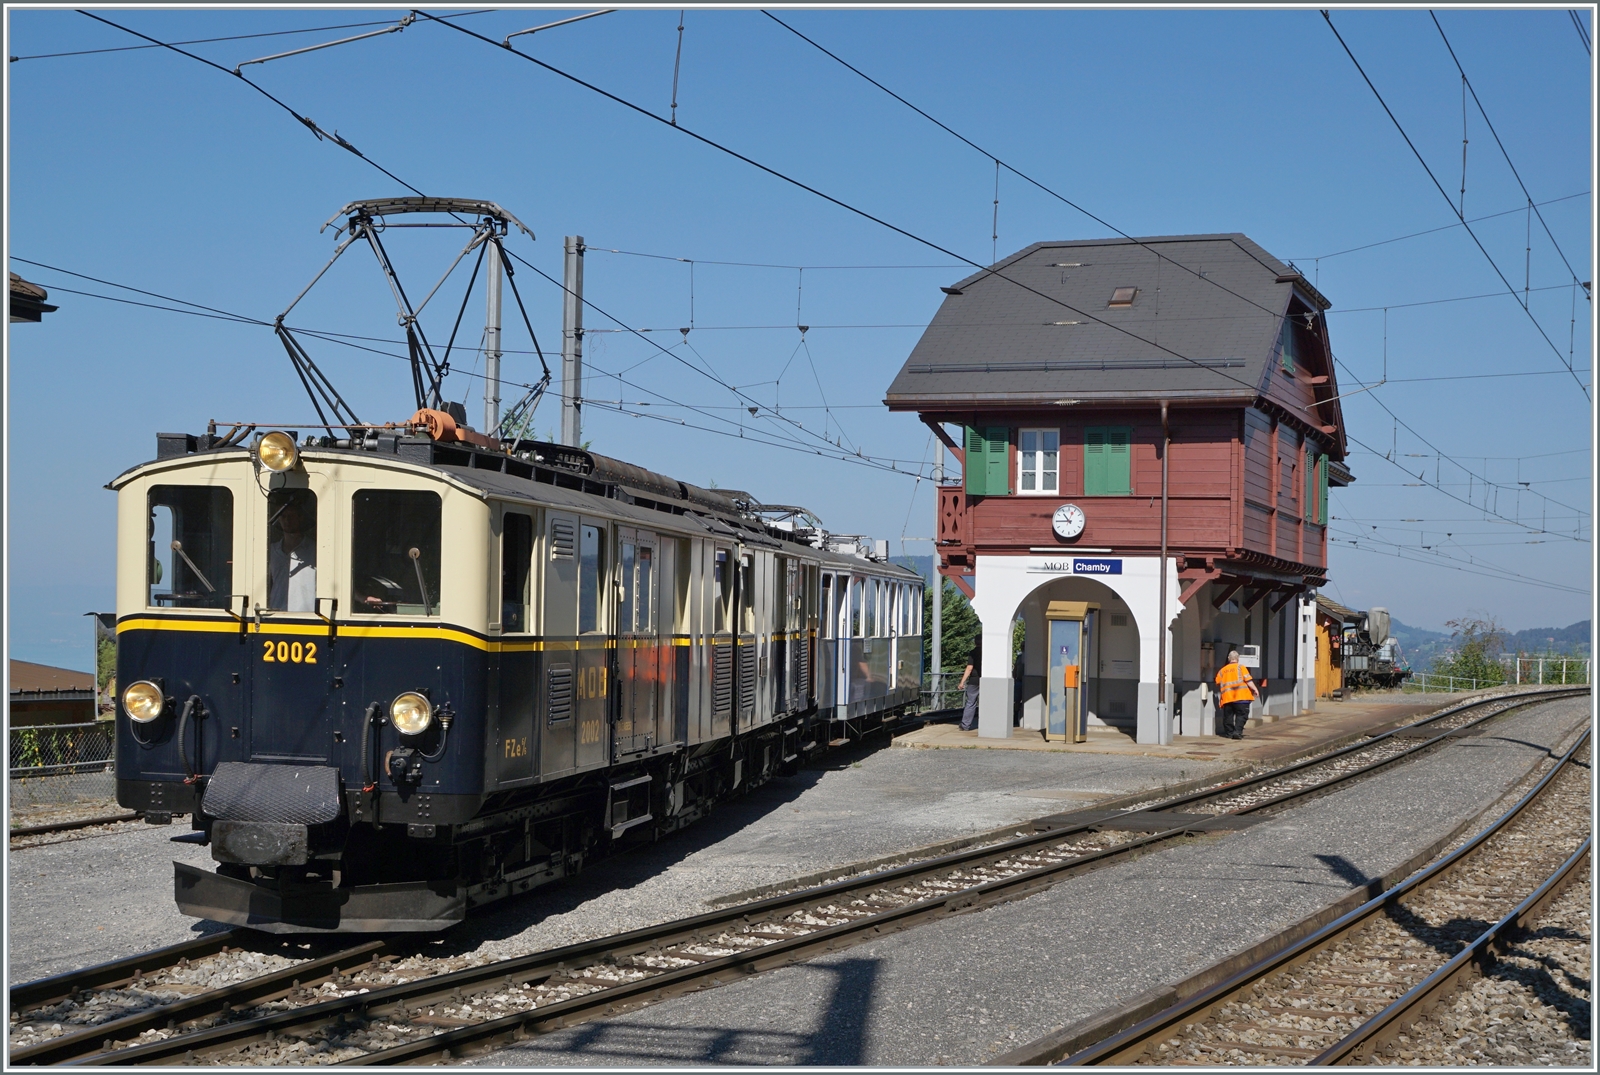 Am örtlichen Stellwerk wird die Rangierfahrt für den FZe 6/6 2002 zur Blonay-Chamby Bahn eingestellt und überwacht.

10. Sept. 2023